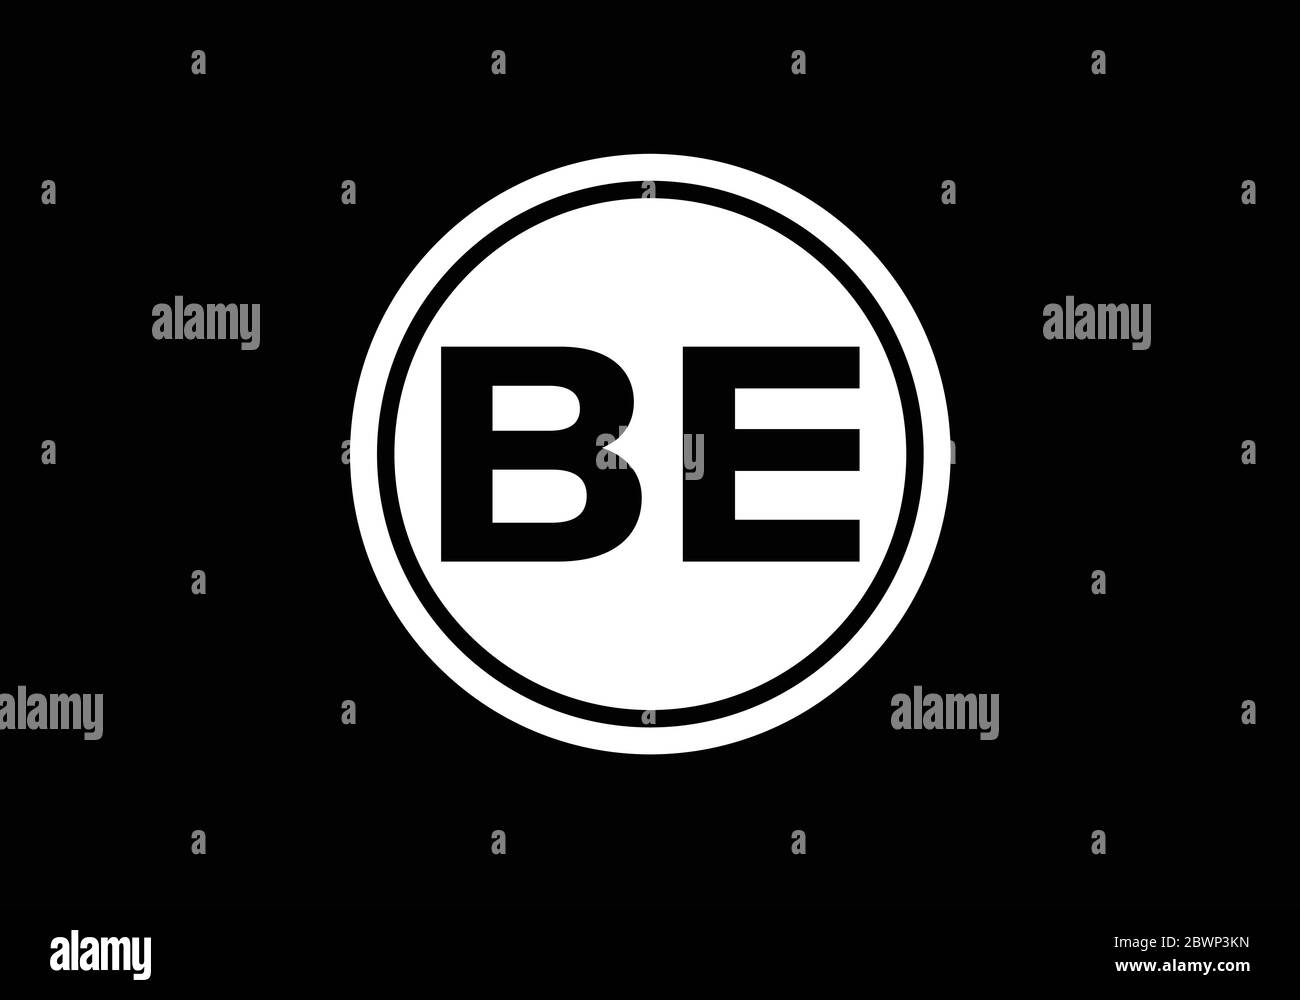 Initial Monogram Letter B E Logo Design Vector Template. B E Letter Logo Design Stock Vector